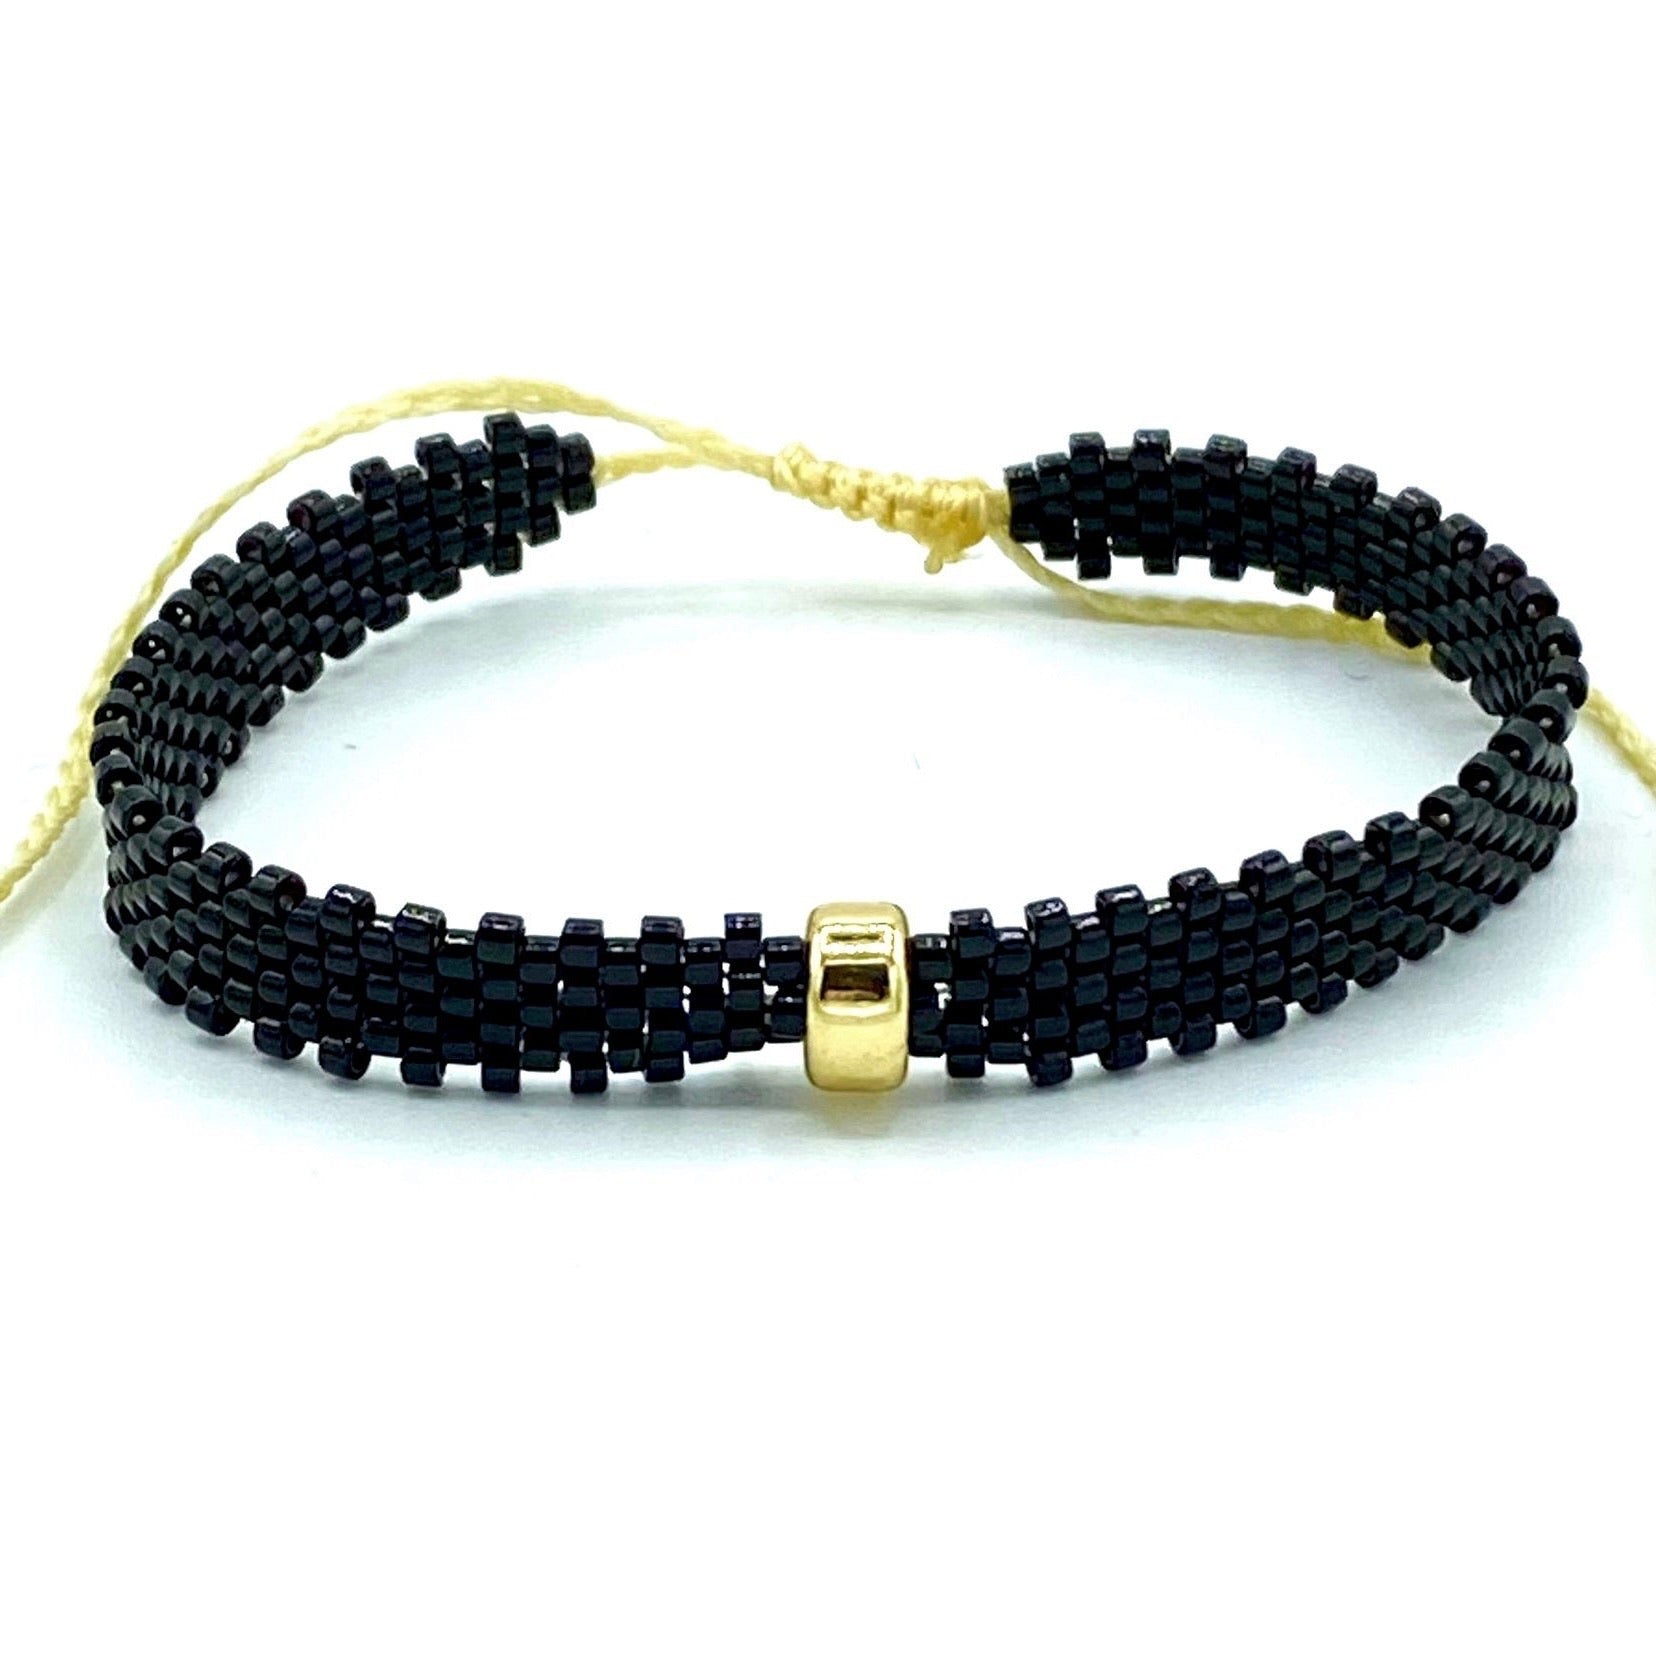 Black mix bracelets